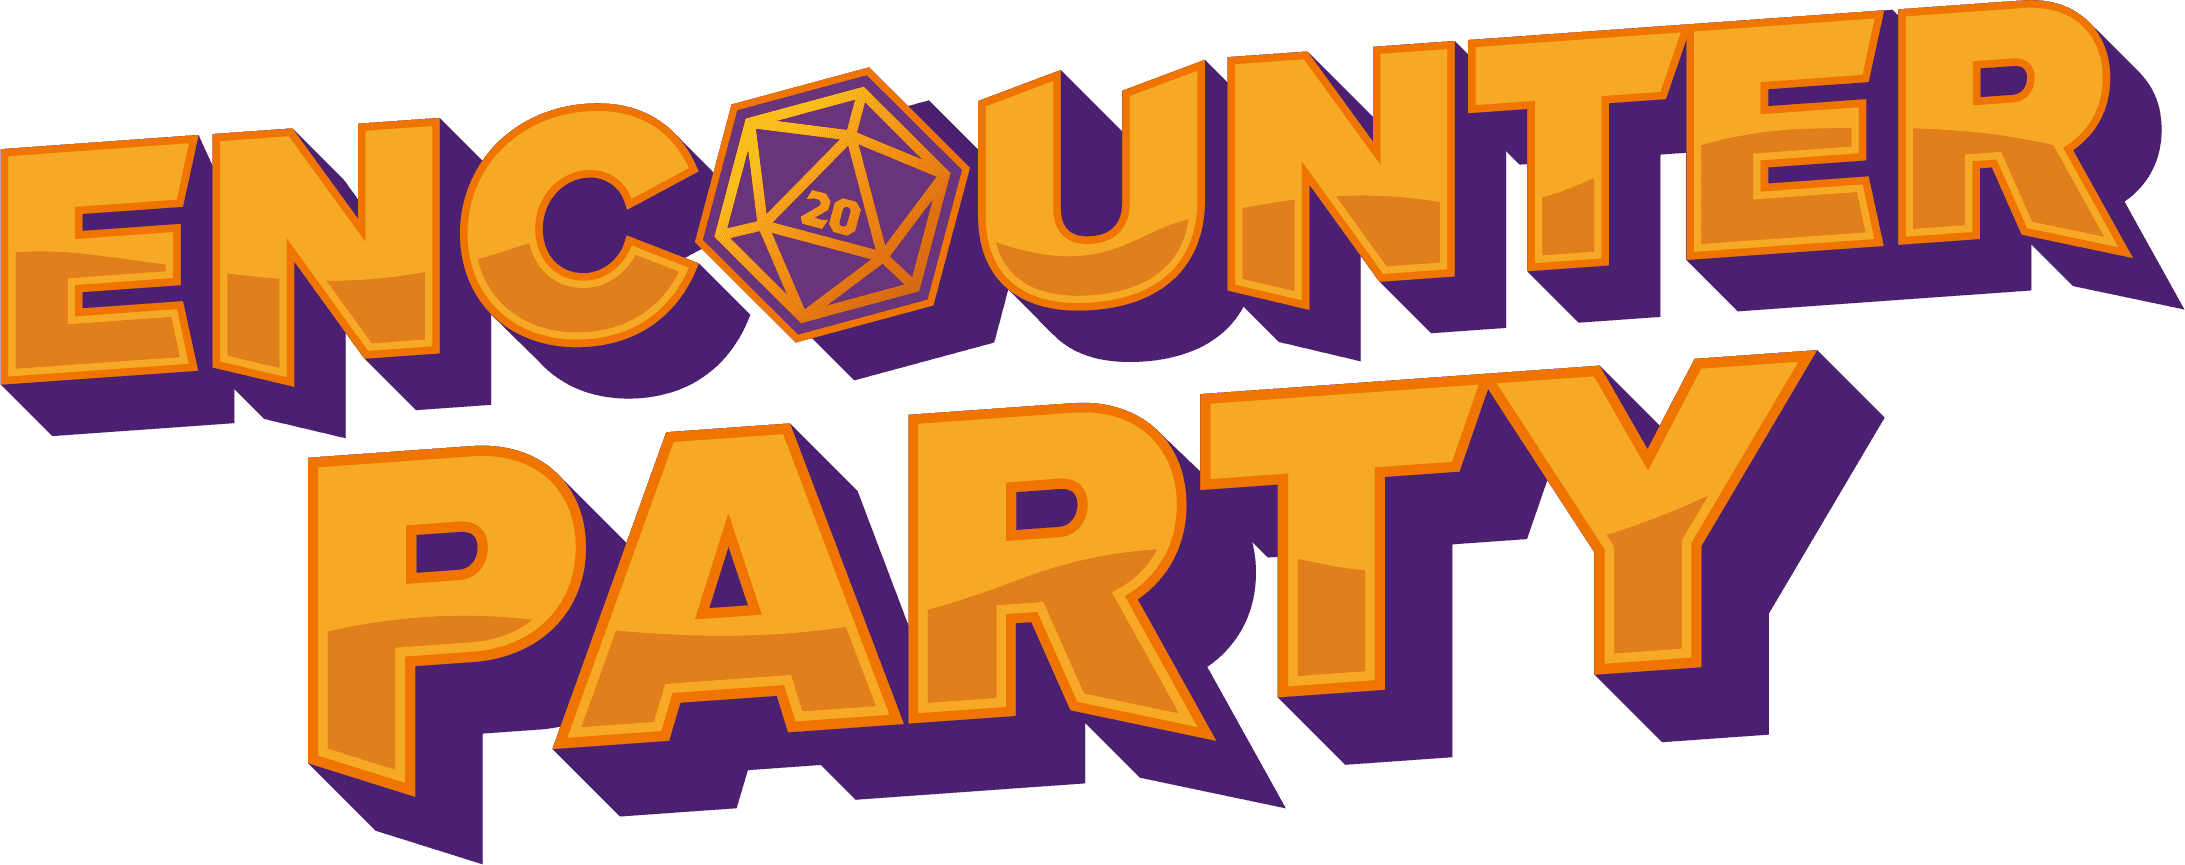 Encounter Party logo